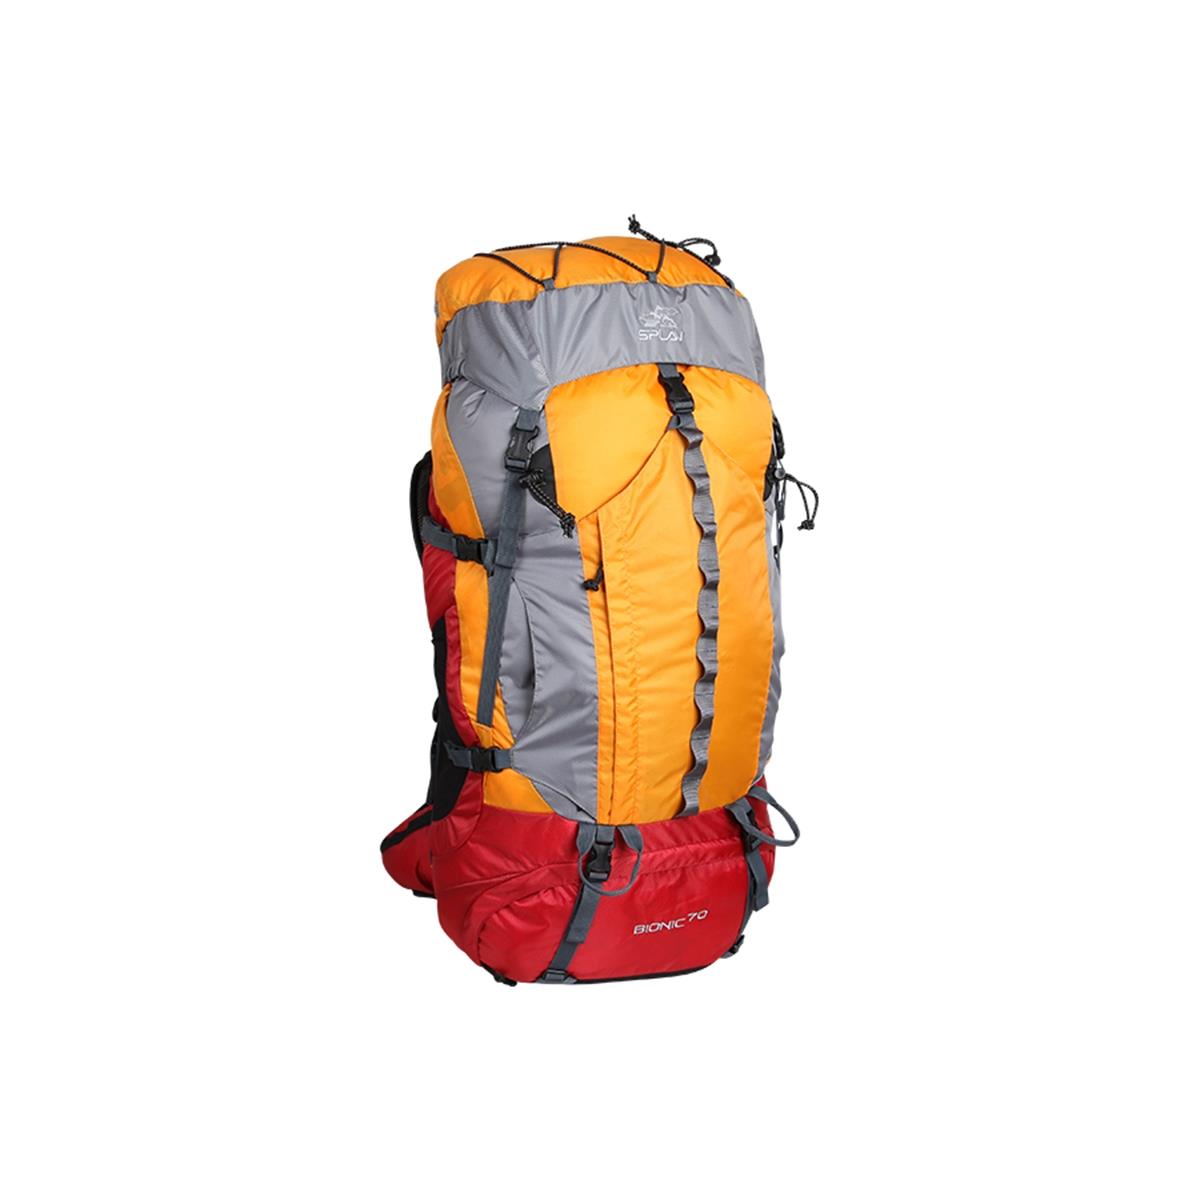 Рюкзак Bionic 70 оранжевый СПЛАВ рюкзак на молнии 3 наружных кармана серый